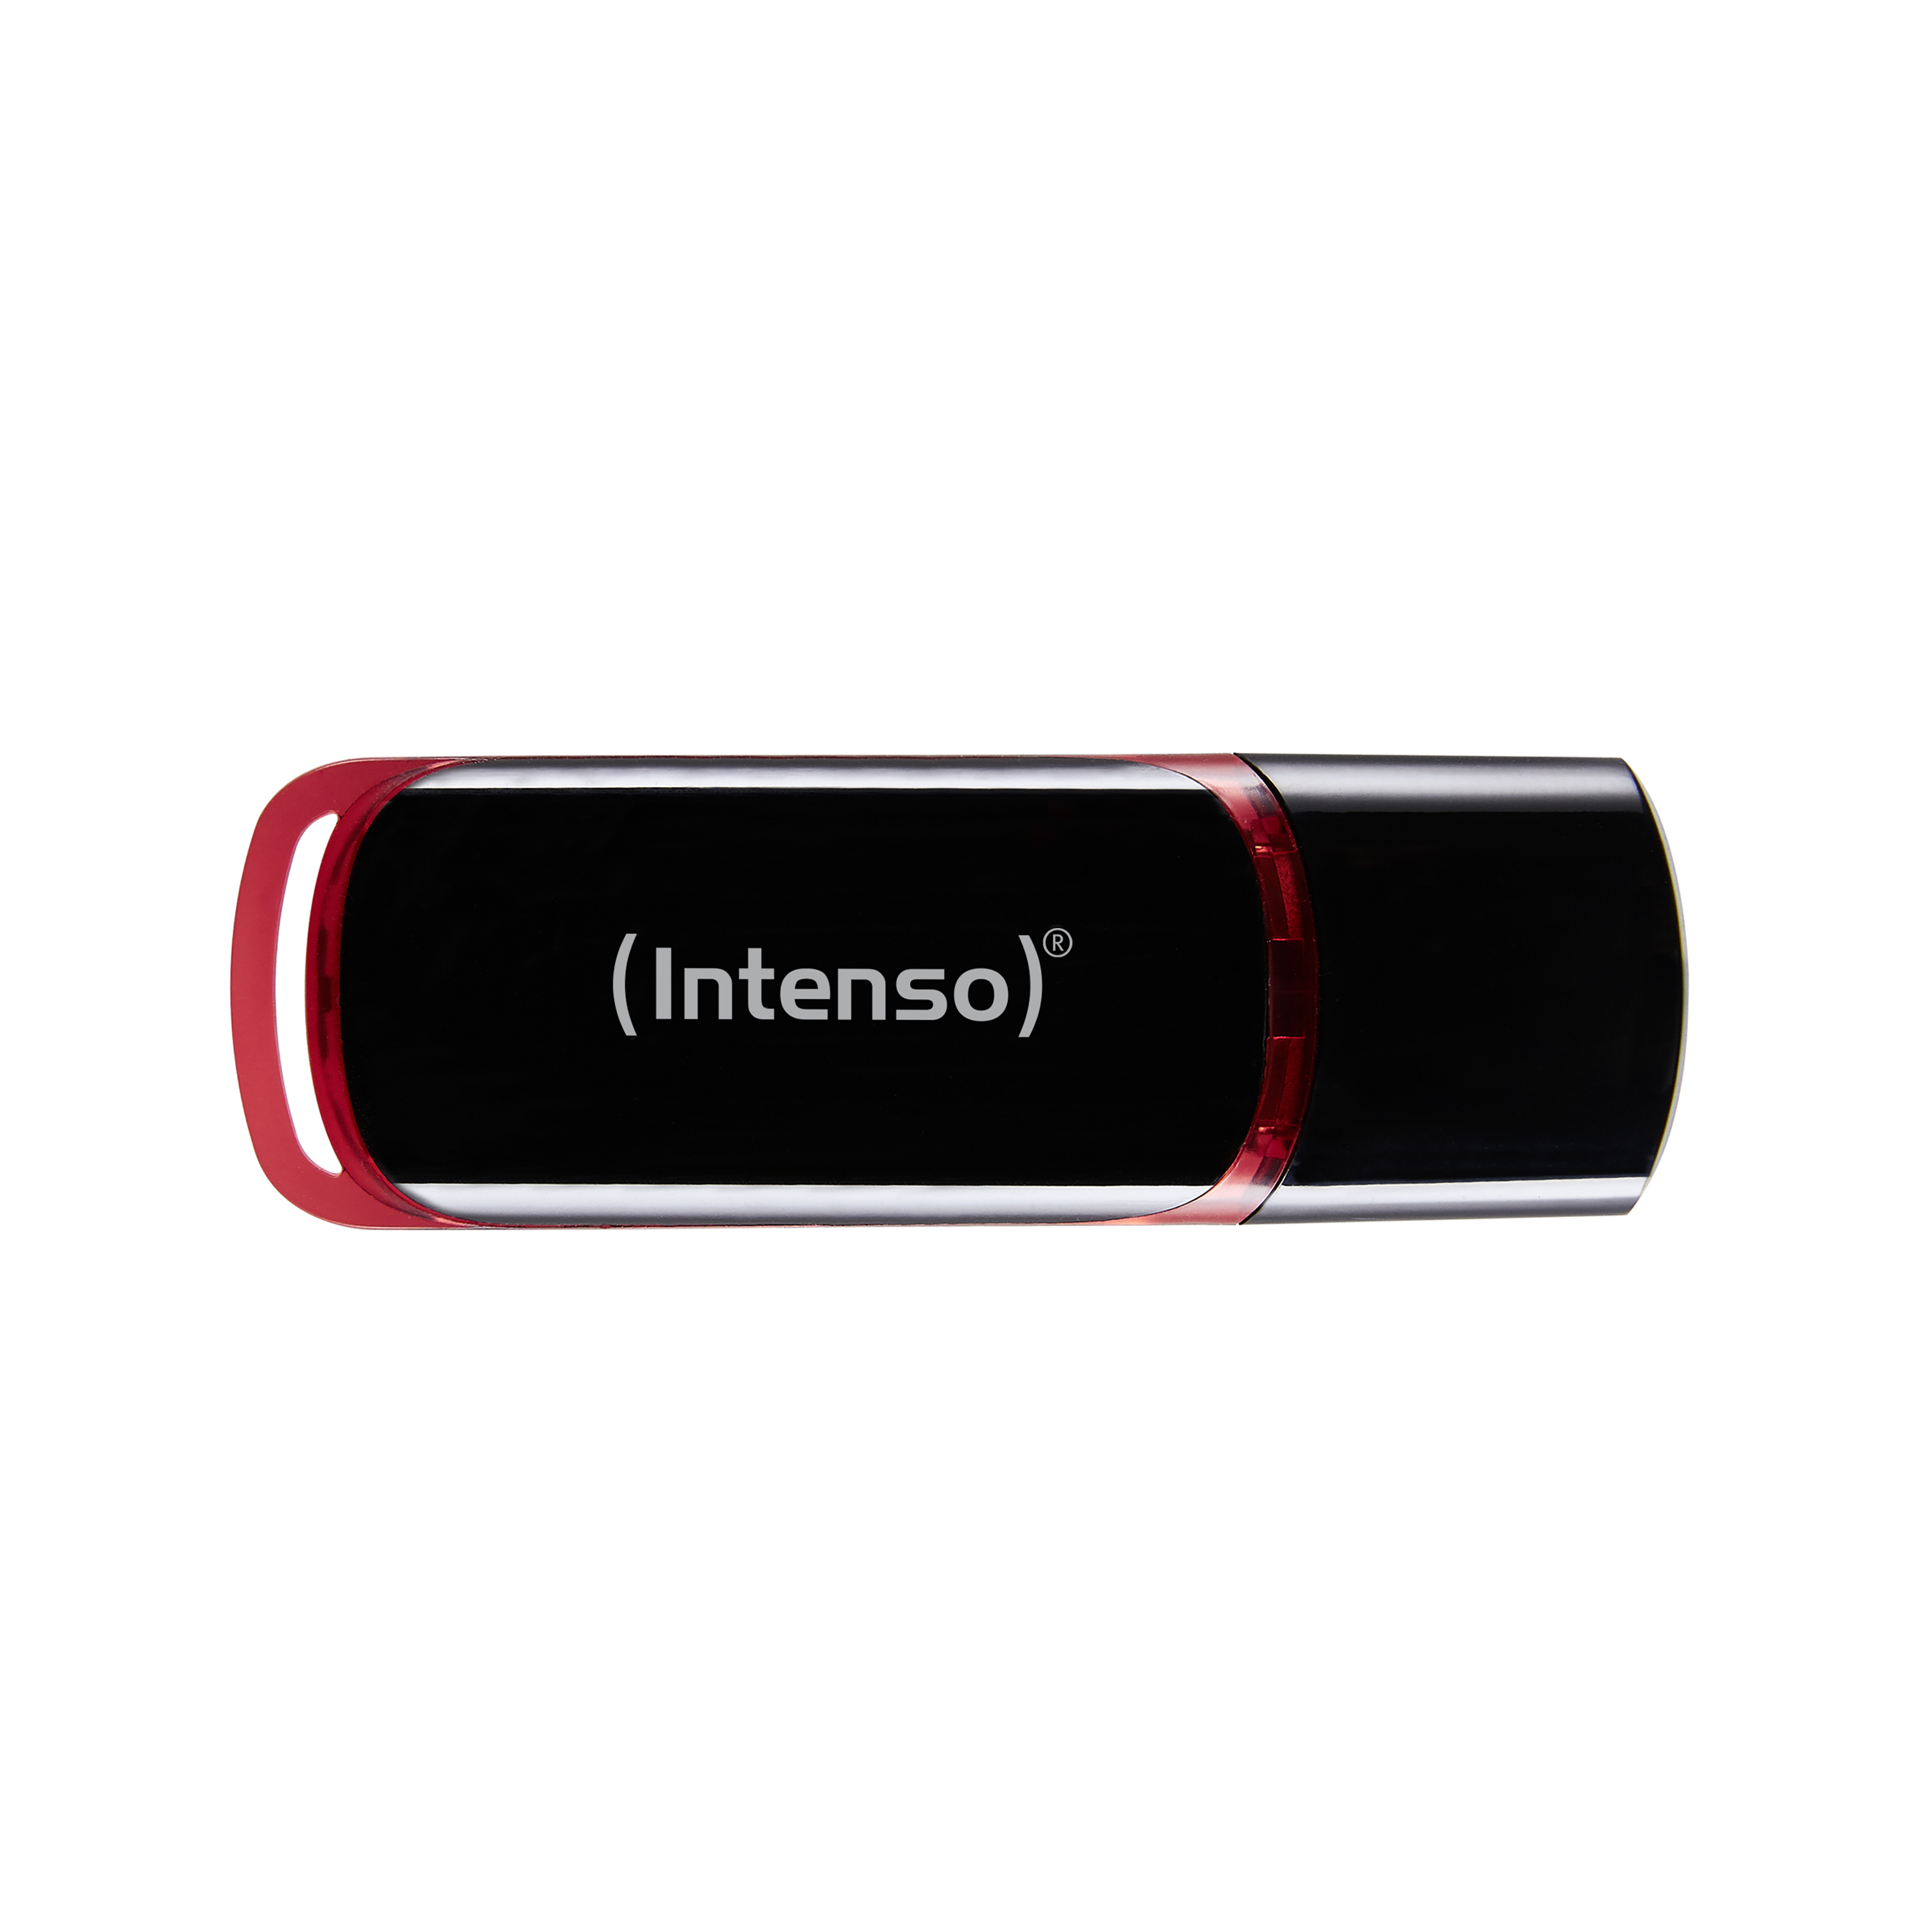 16GB (schwarz-rot, GB) USB-Stick Line INTENSO 16 Business